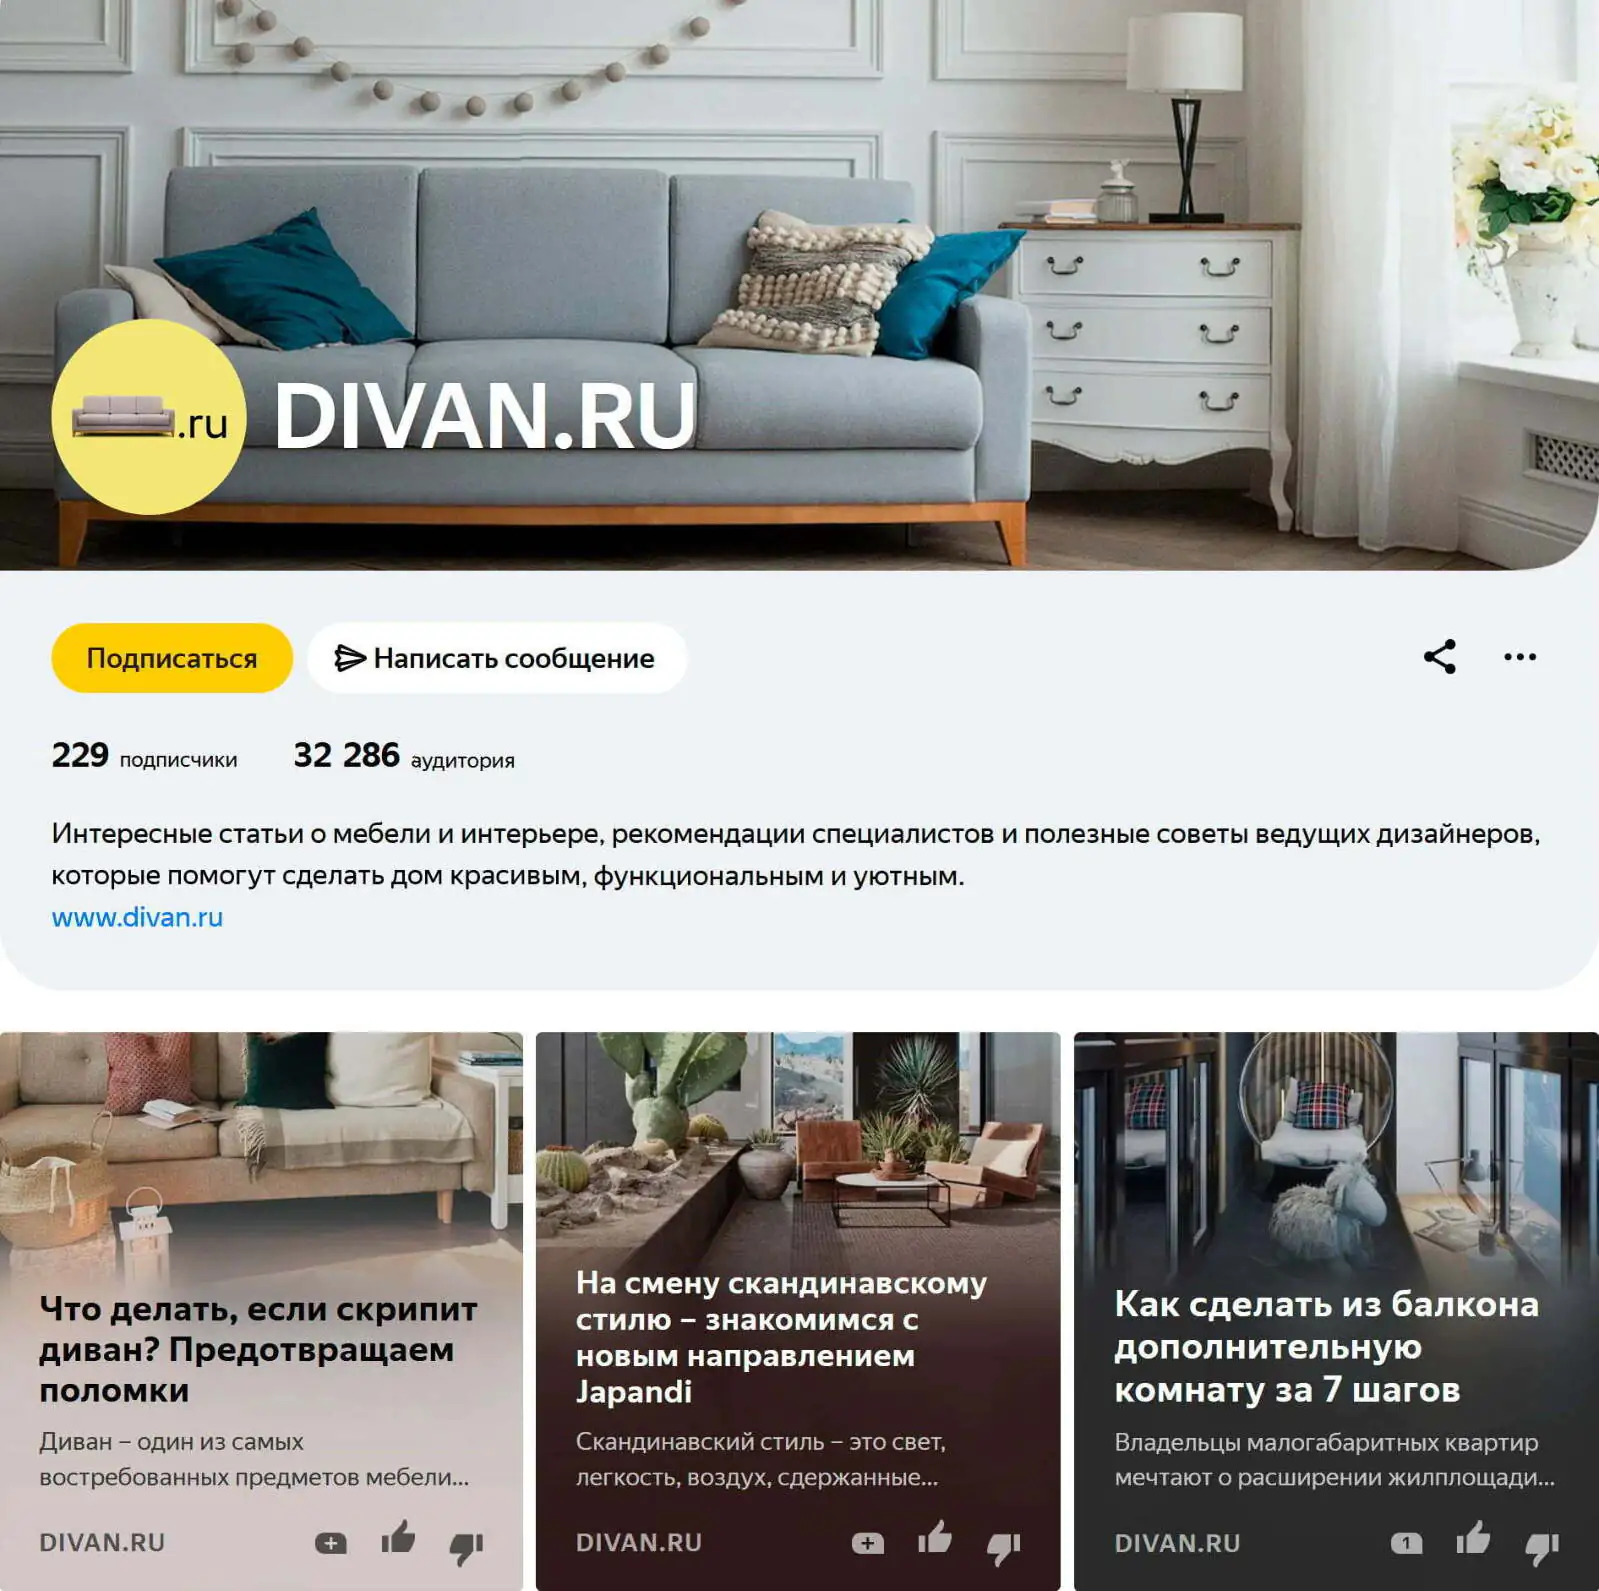 Страница divan.ru на «Яндекс.Дзен»